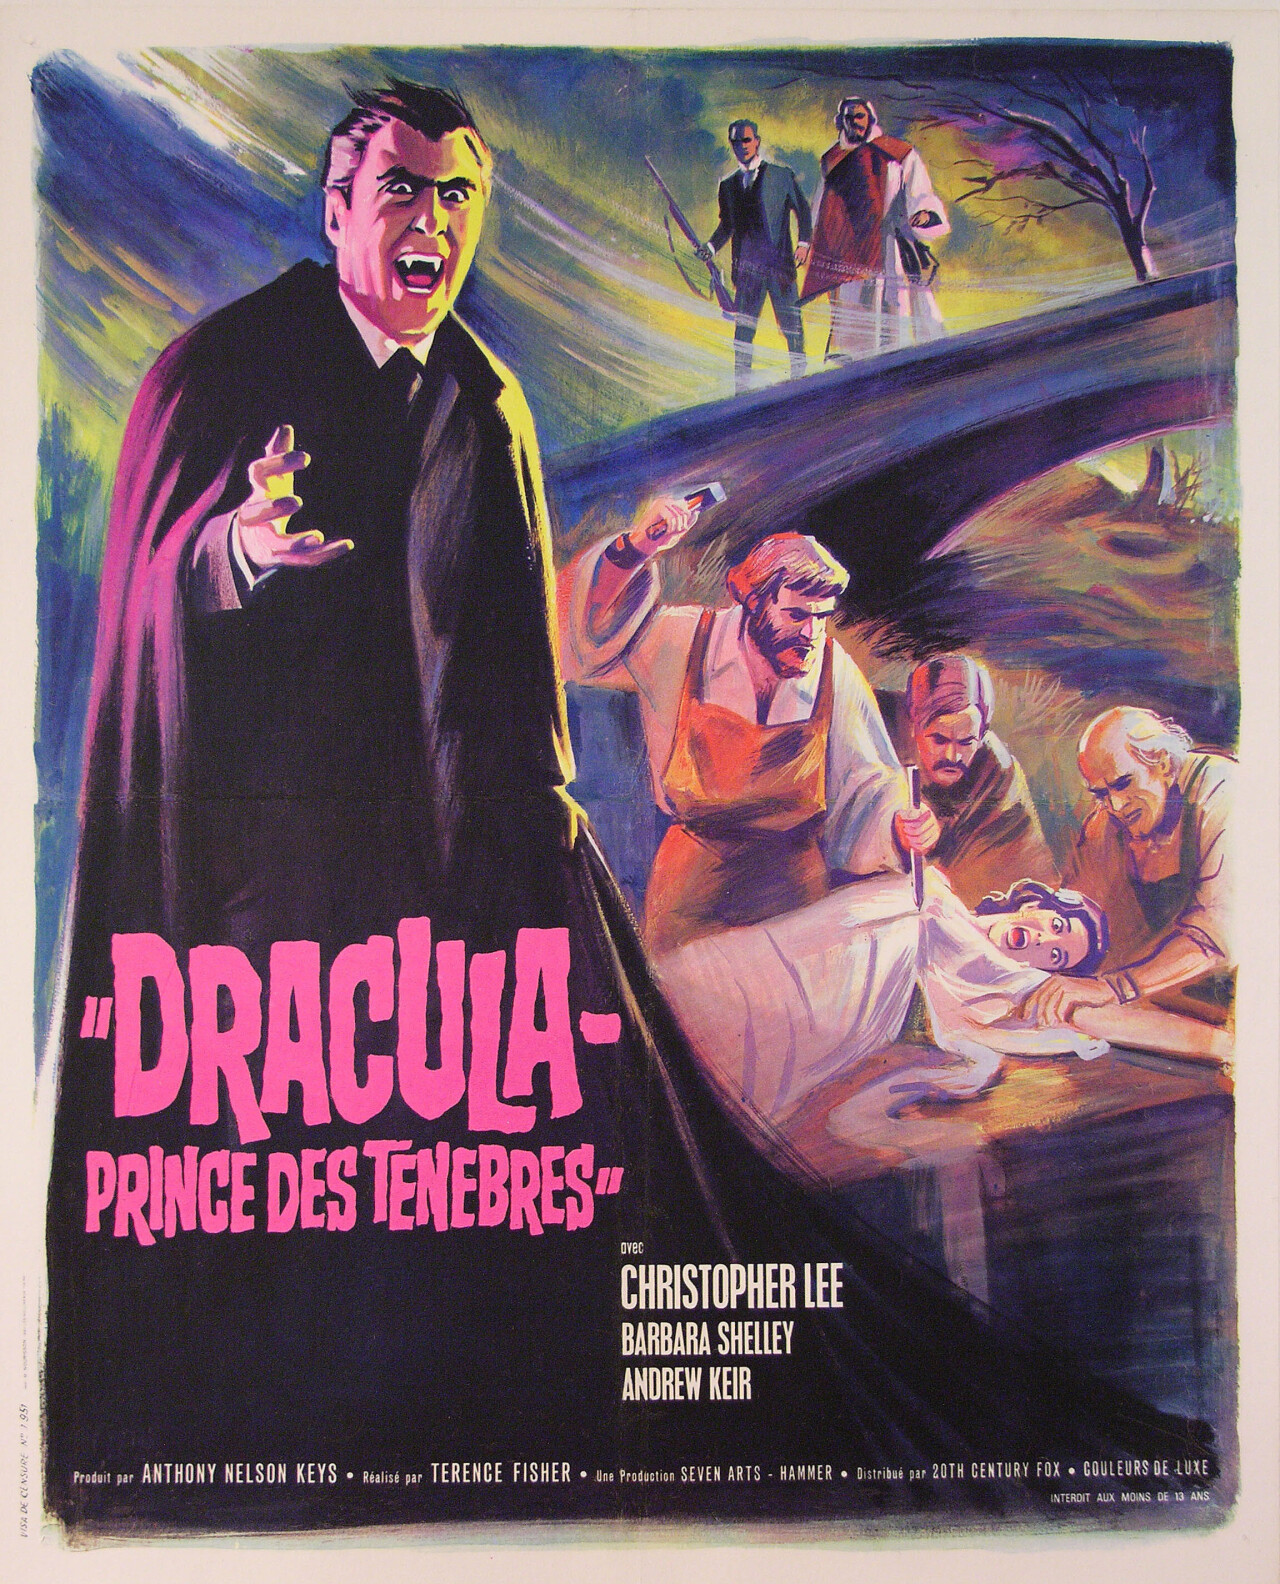 Дракула: Принц тьмы (Dracula Prince of Darkness, 1966), режиссёр Теренс Фишер, французский постер к фильму (Hummer horror, 1966 год)